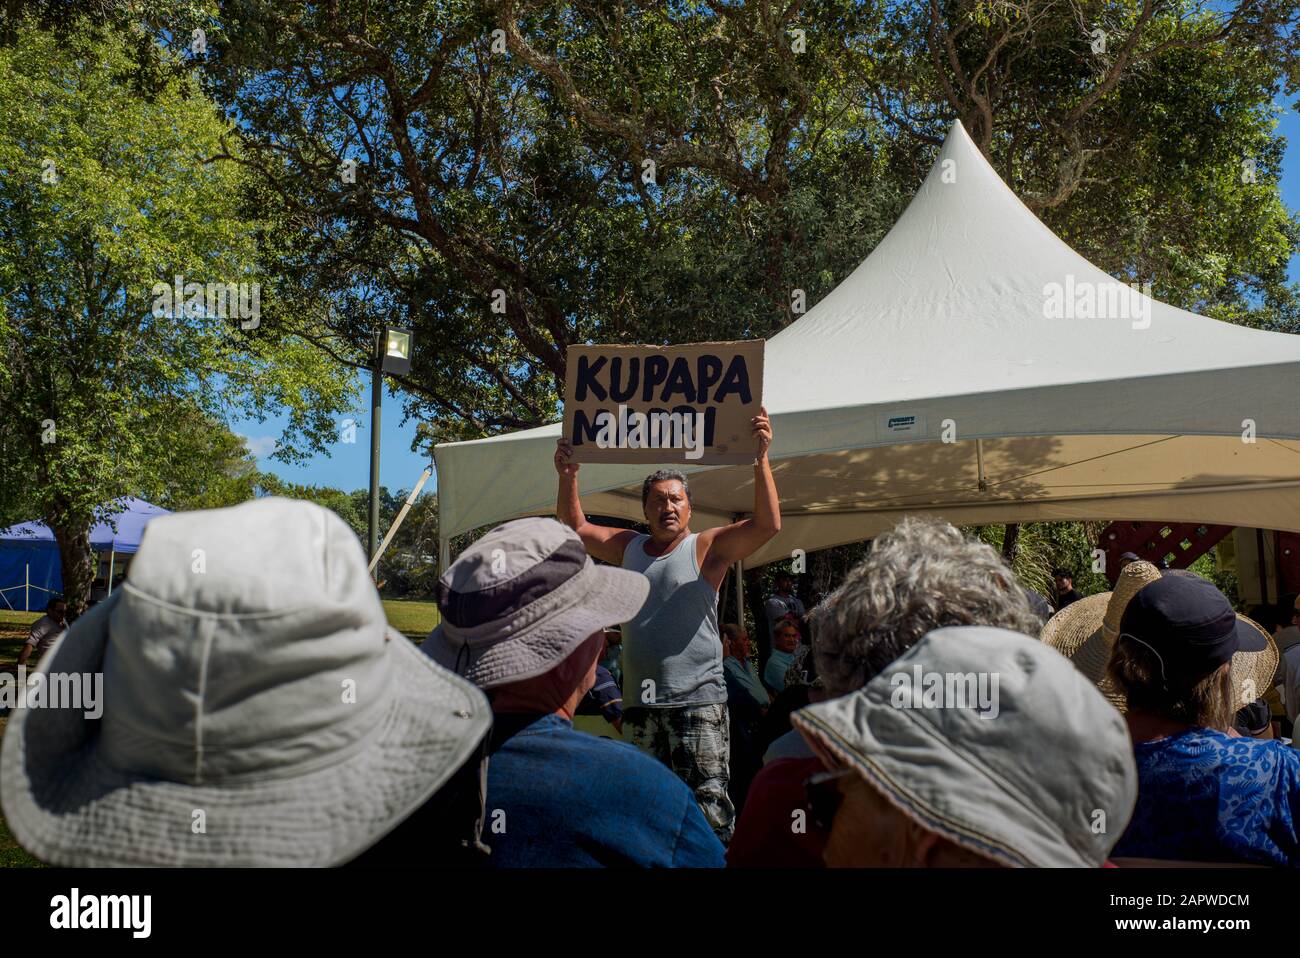 Durante la mañana, el servicio religioso en las celebraciones del día de Waitangi, un hombre maorí mantiene un cartel en el que lee Kupapa Maori (que significa que colabora maorí). Foto de stock